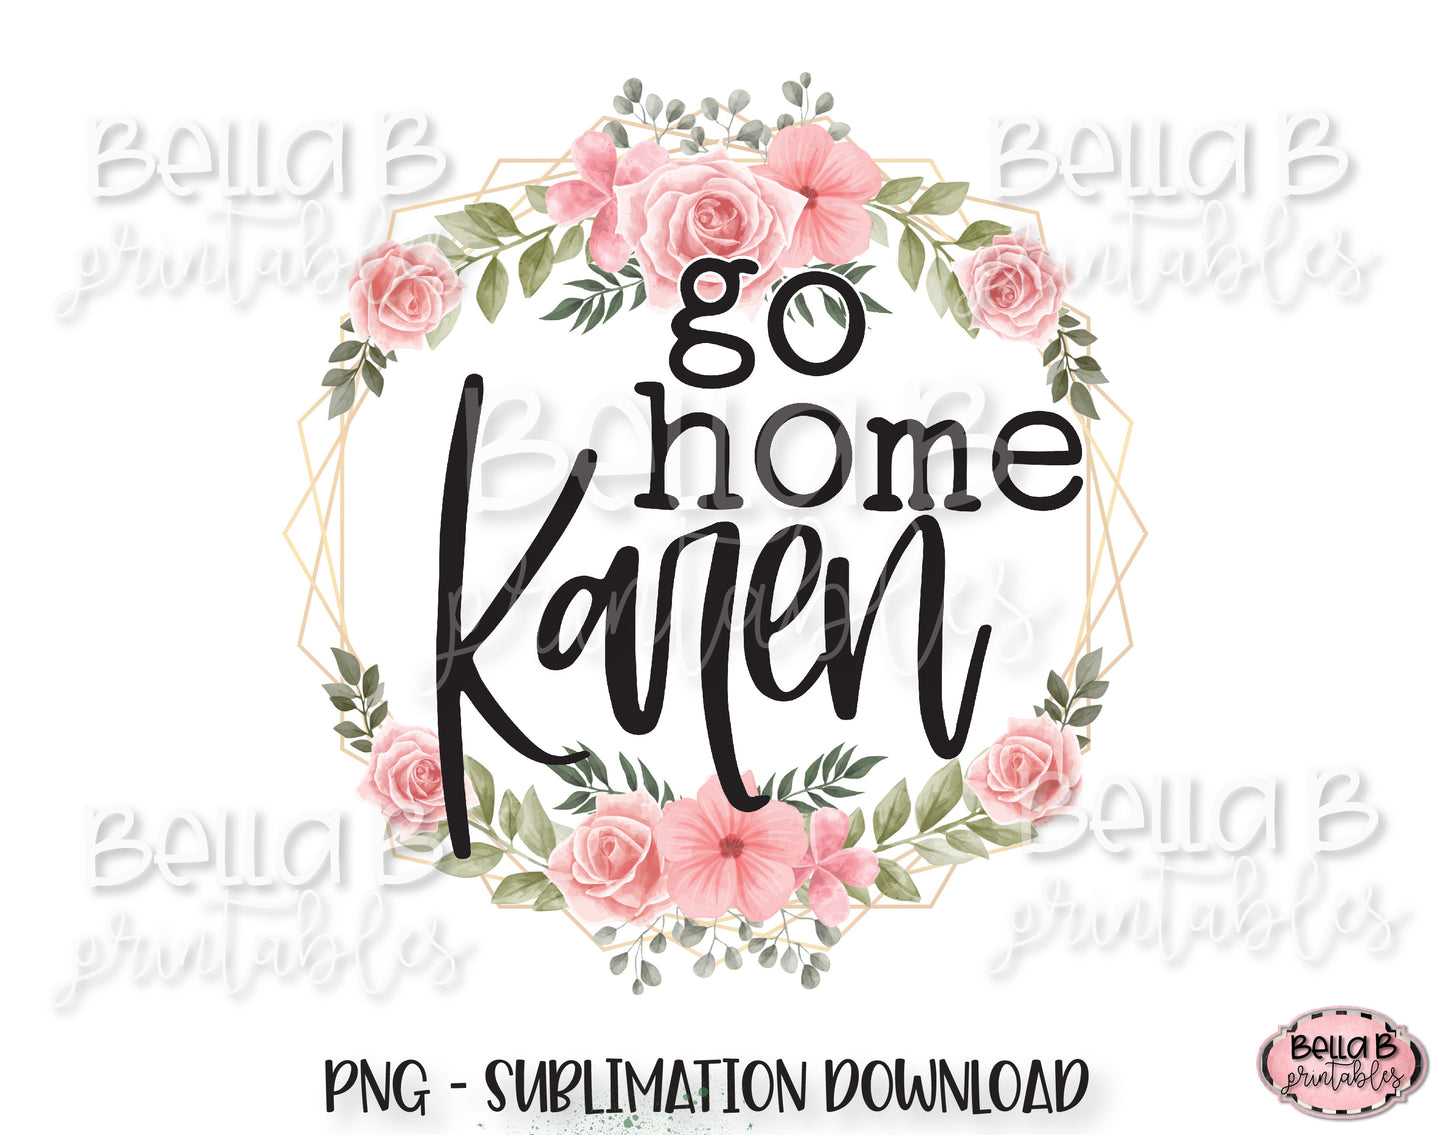 Go Home Karen Sublimation Design, Funny Karen Design